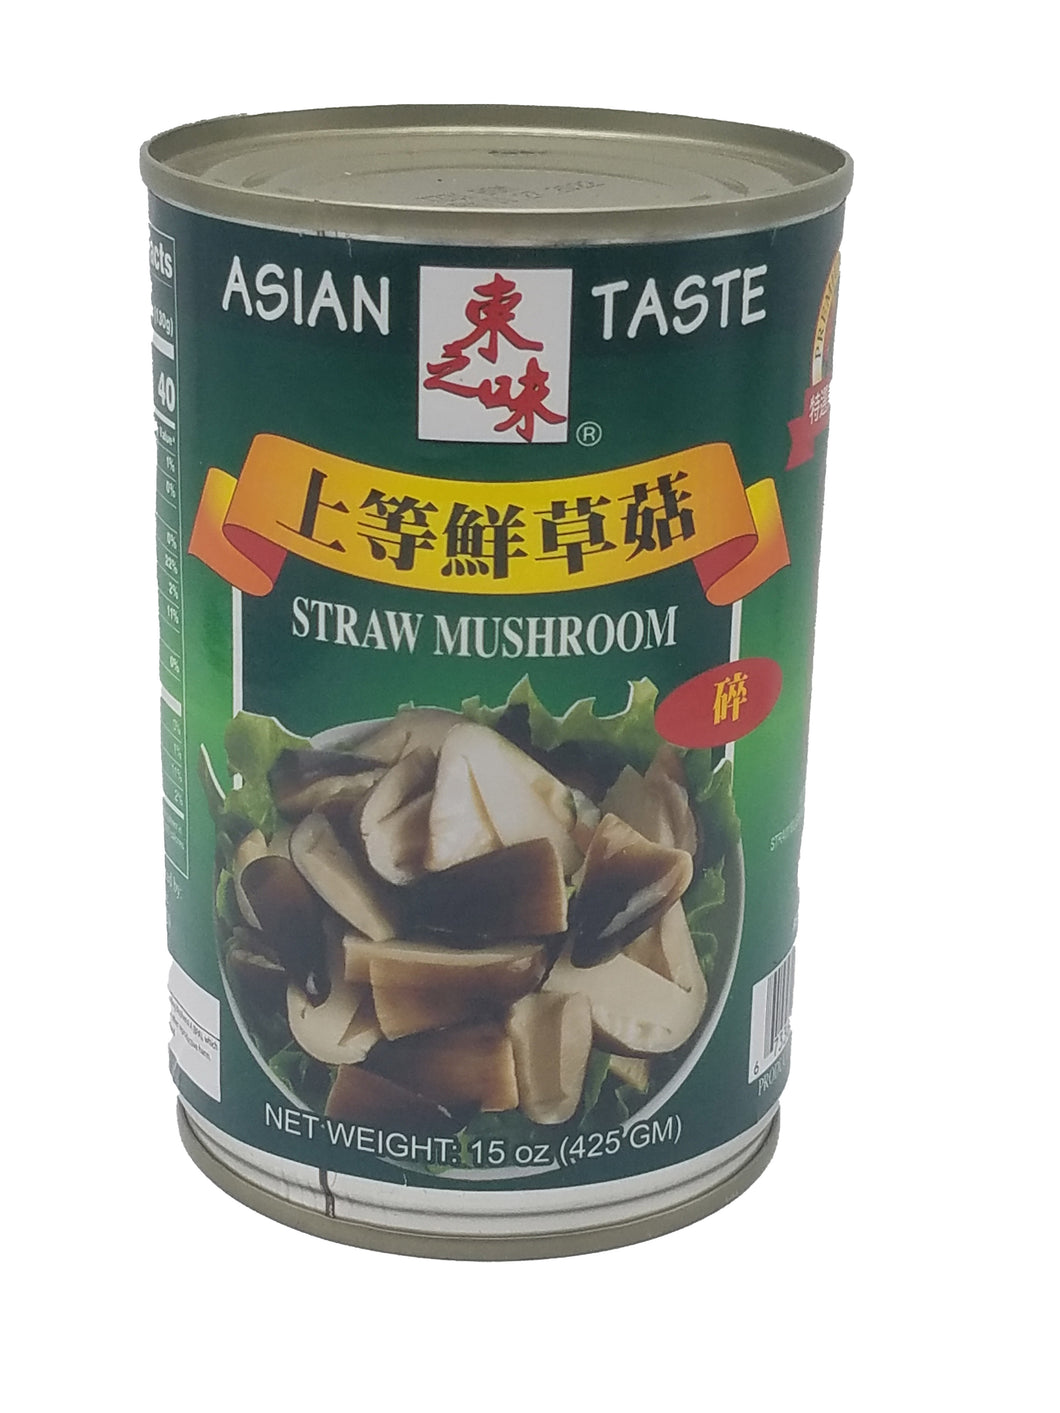 Asian Taste Broken Straw Mushrooms